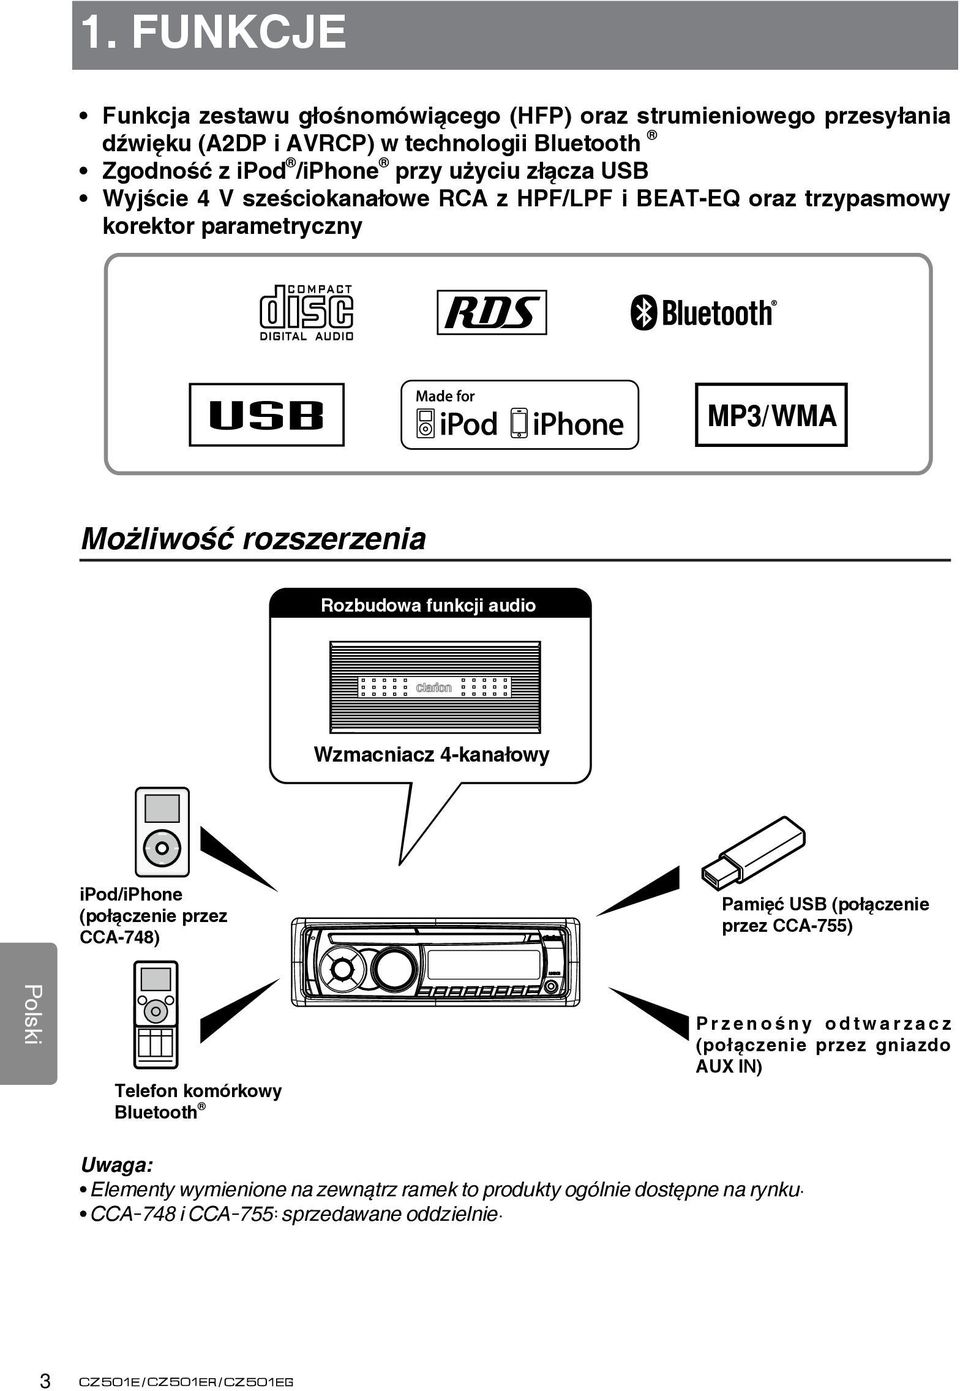 Wzmacniacz 4-kanałowy ipod/iphone (połączenie przez CCA-748) Pamięć USB (połączenie przez CCA-755) Telefon komórkowy Bluetooth P r z e n o ś n y o d t w a r z a